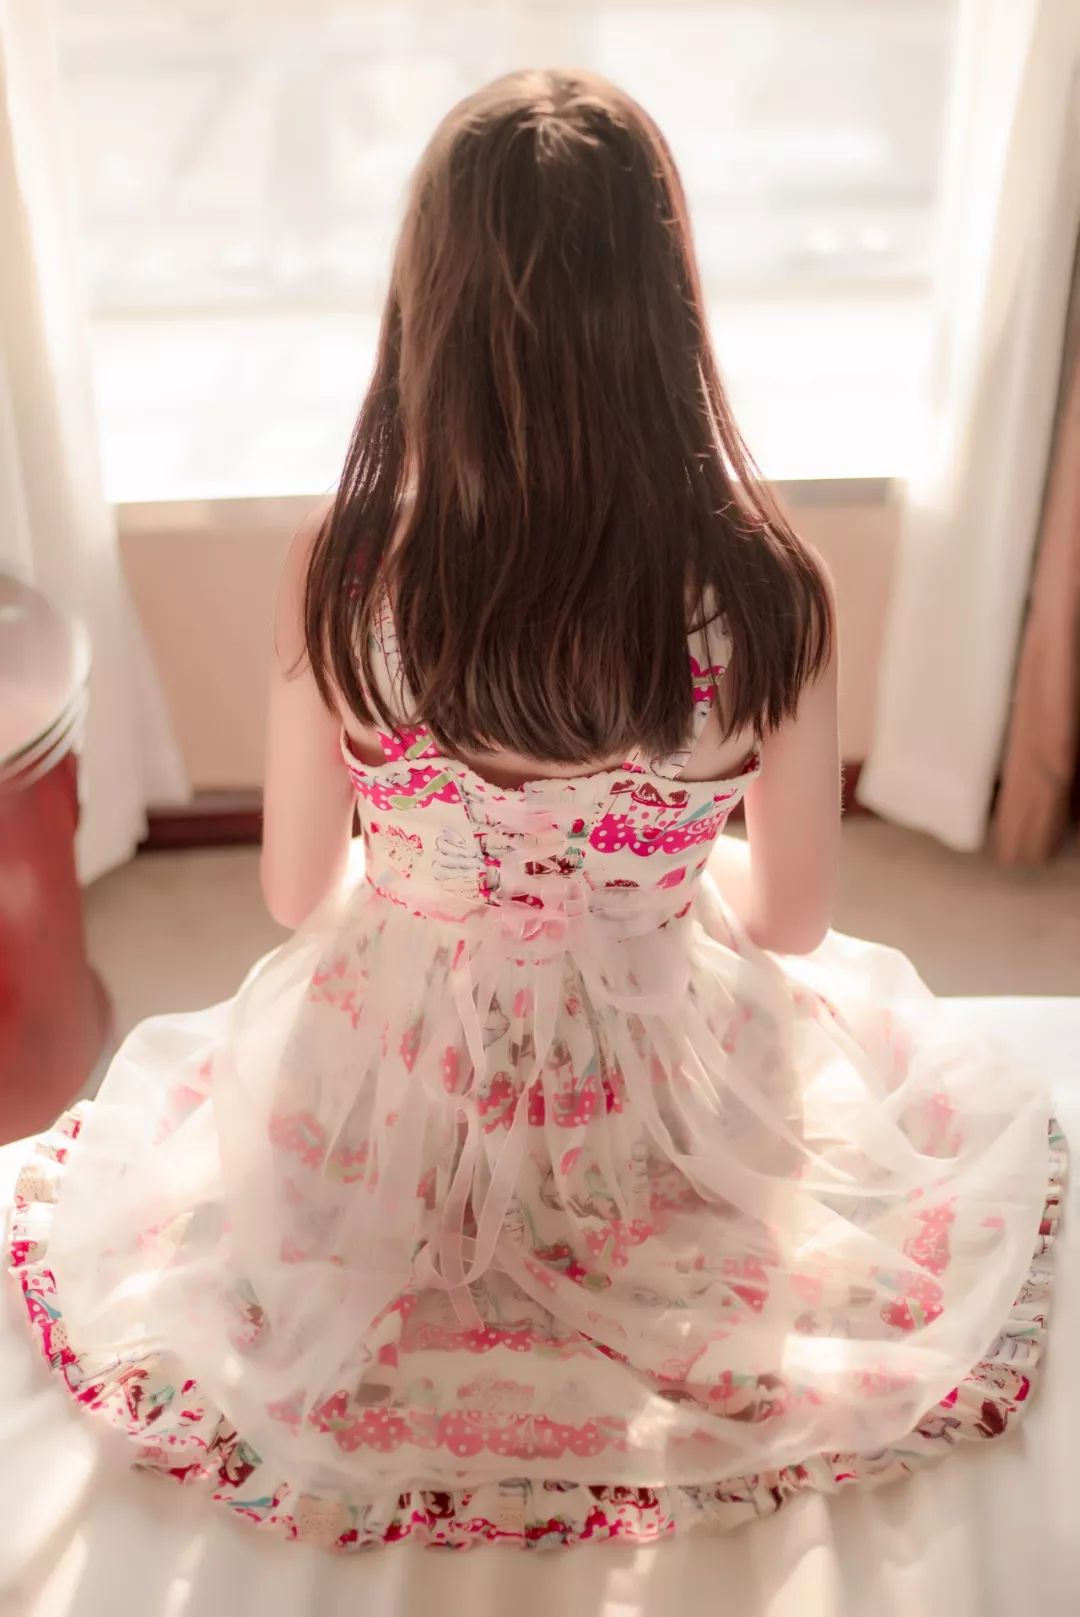 妹子摄影 – 白丝萝莉花裙子，让人怦然心动_图片 No.1